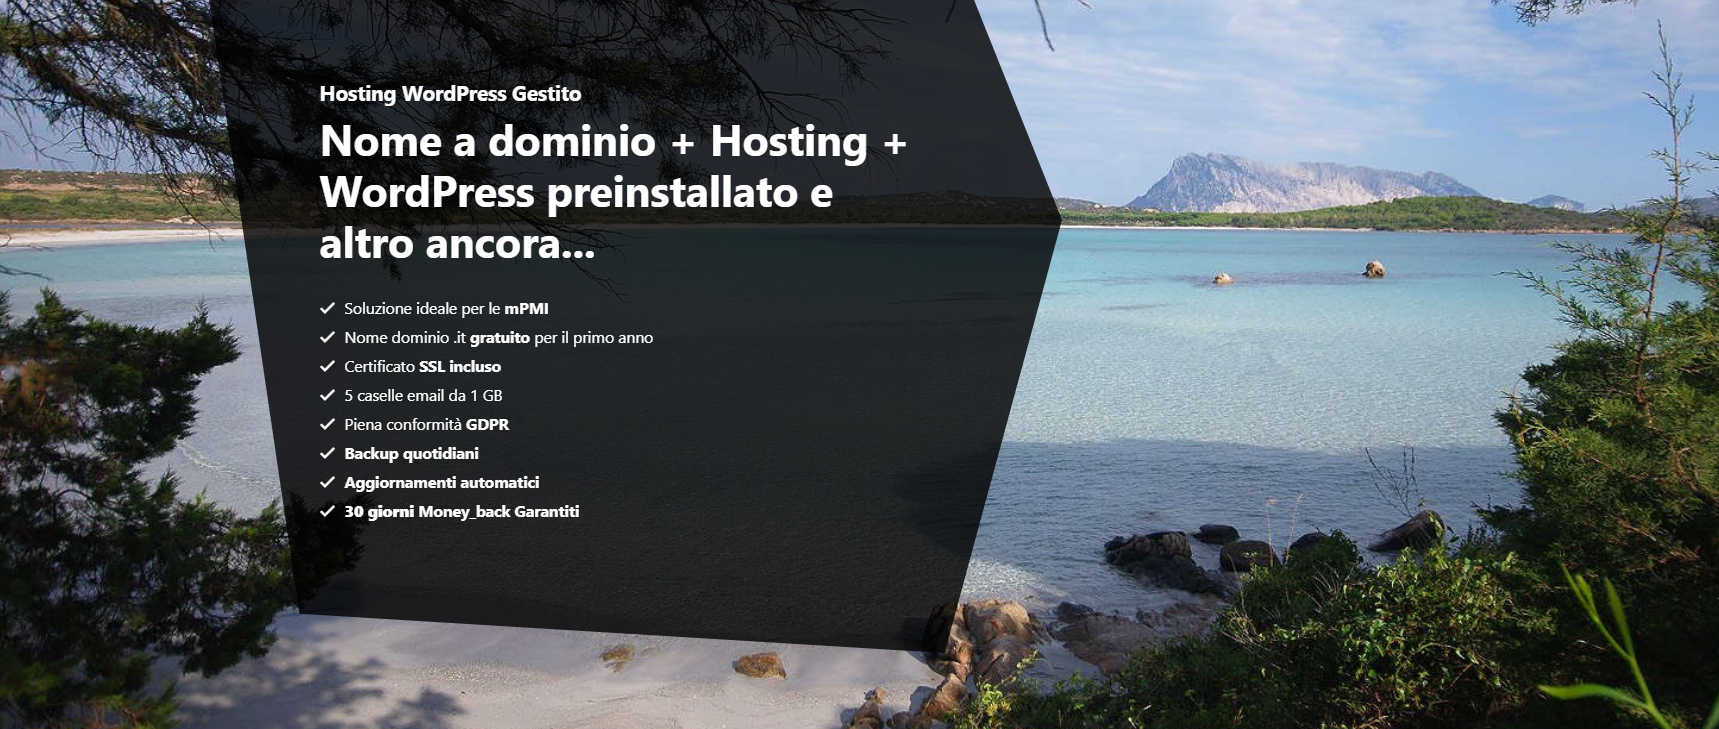 Dominio e Hosting con WordPress preisntallato - Hosteja.com